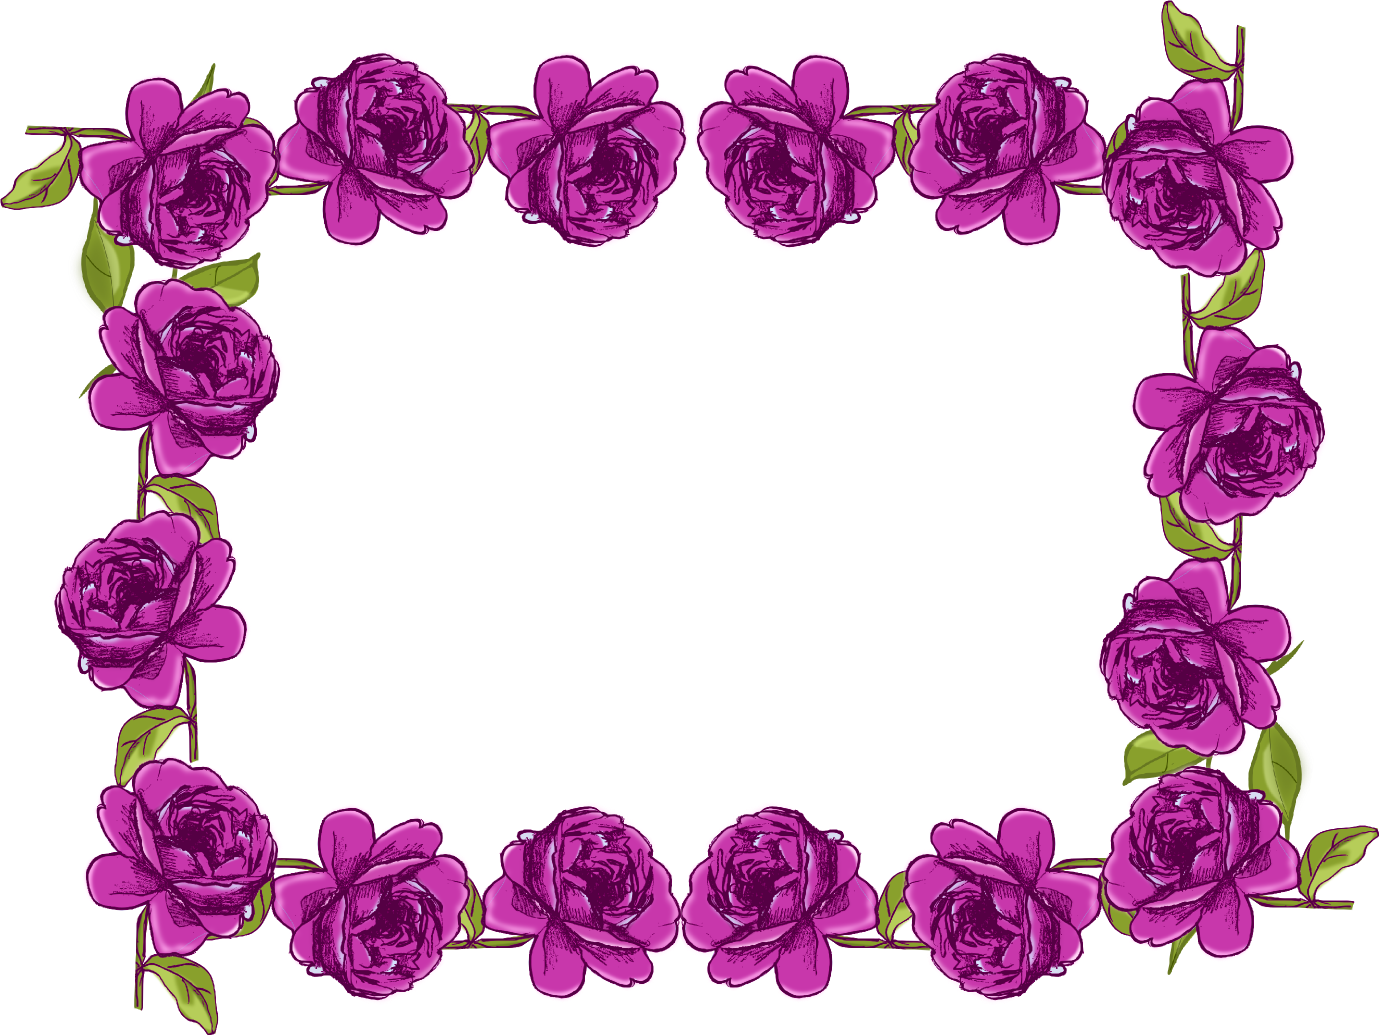 Free Digital Purple Rose Frame - Violet Flower Border Design (1379x1035)